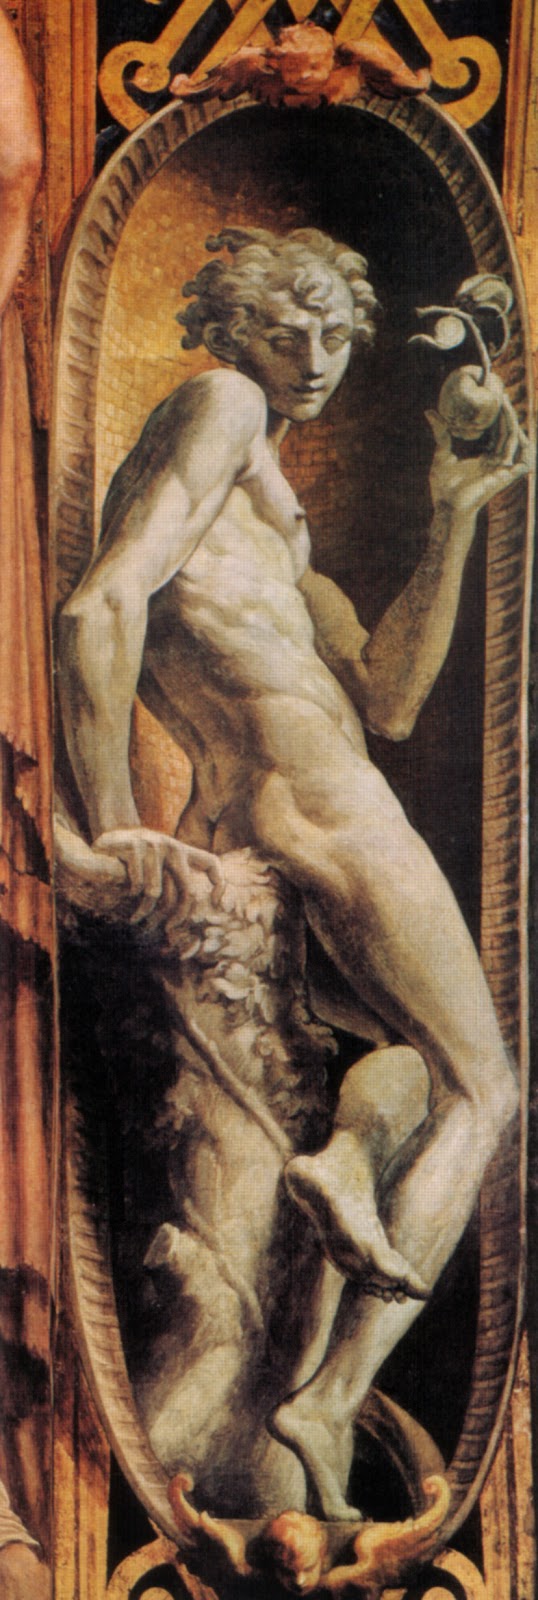 Parmigianino-1503-1540 (4).jpg